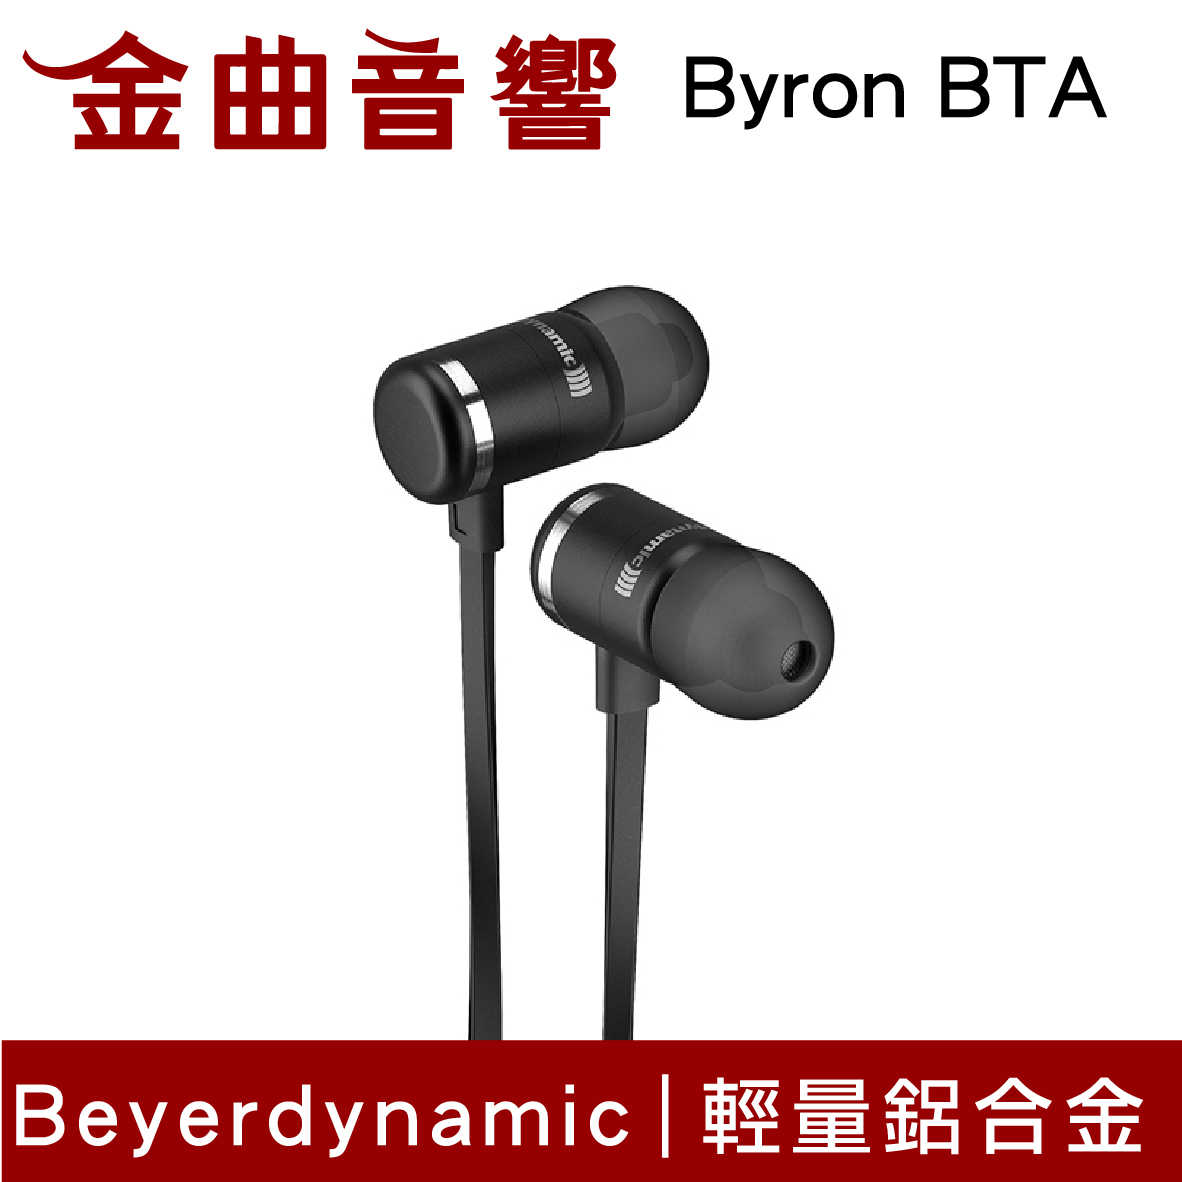 【福利機C組】Beyerdynamic 拜耳 Byron BTA 無線 藍芽 線控 耳道式耳機 | 金曲音響